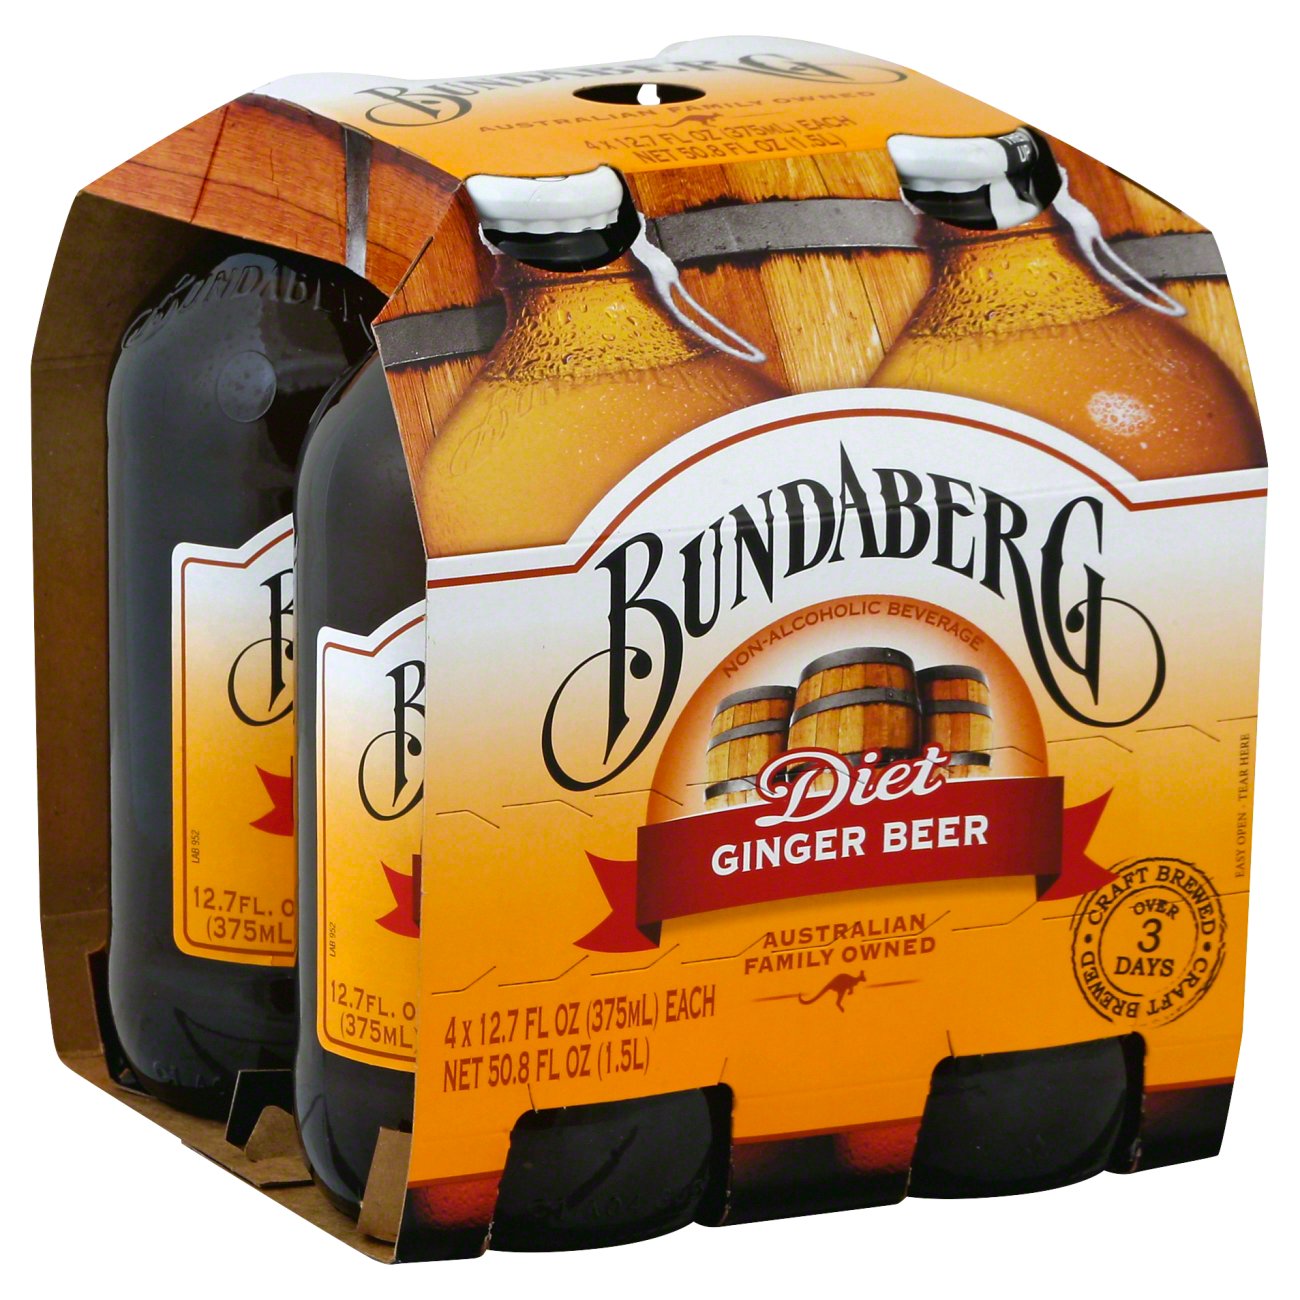 Bundaberg T Ginger Beer 12 7 Oz